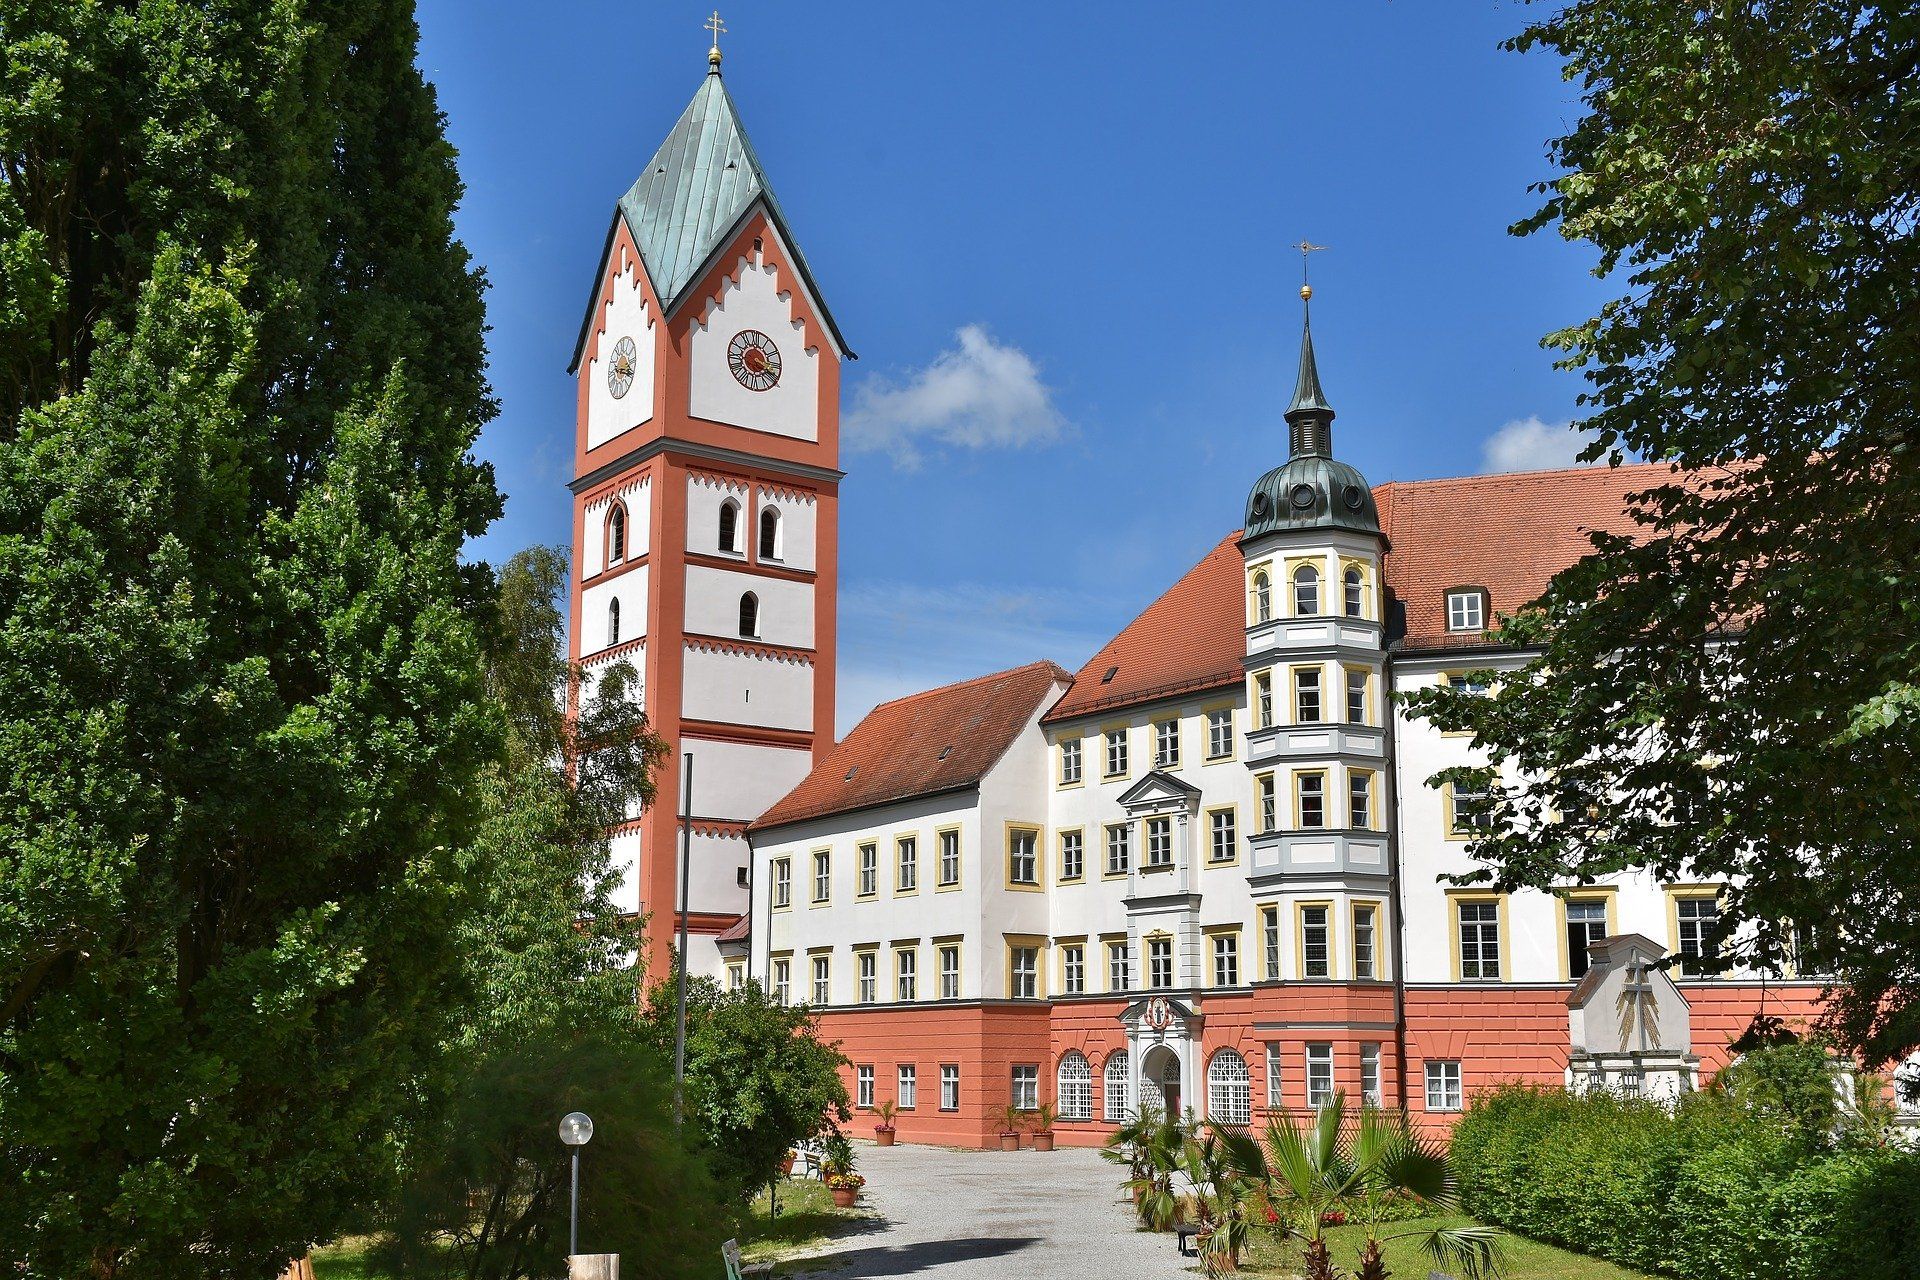 Scheyern Monastery